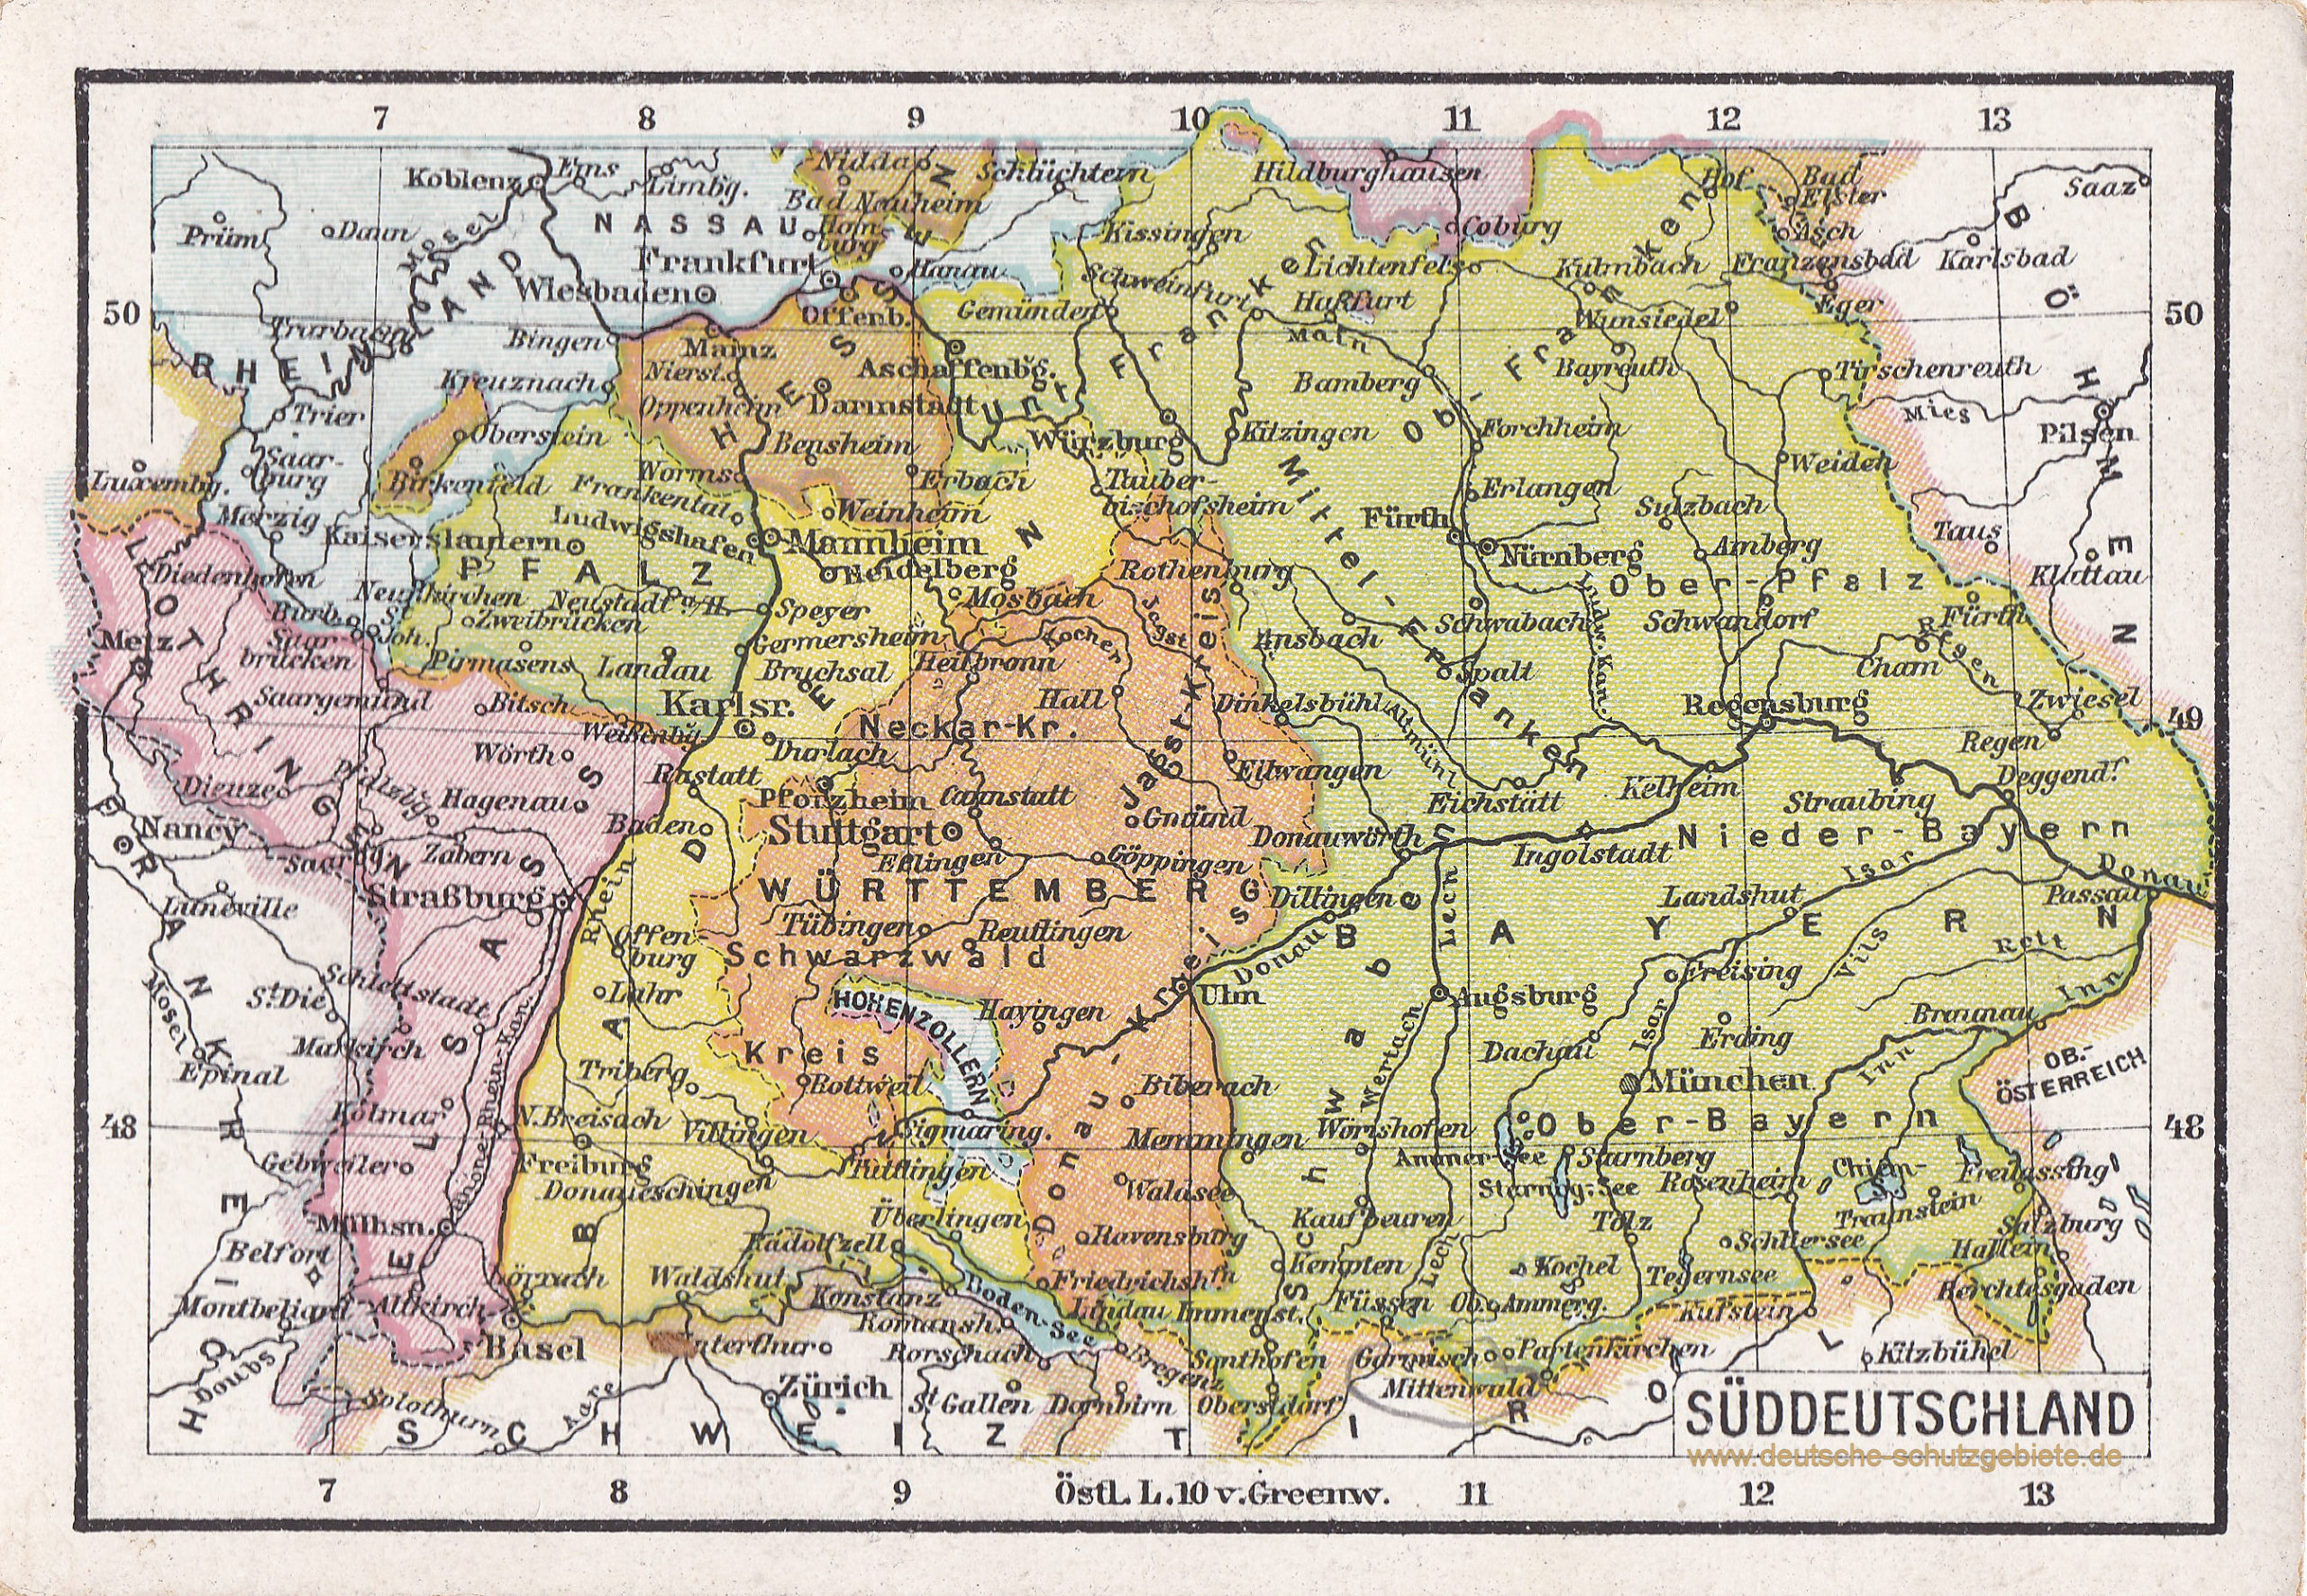 Süddeutschland (1912)